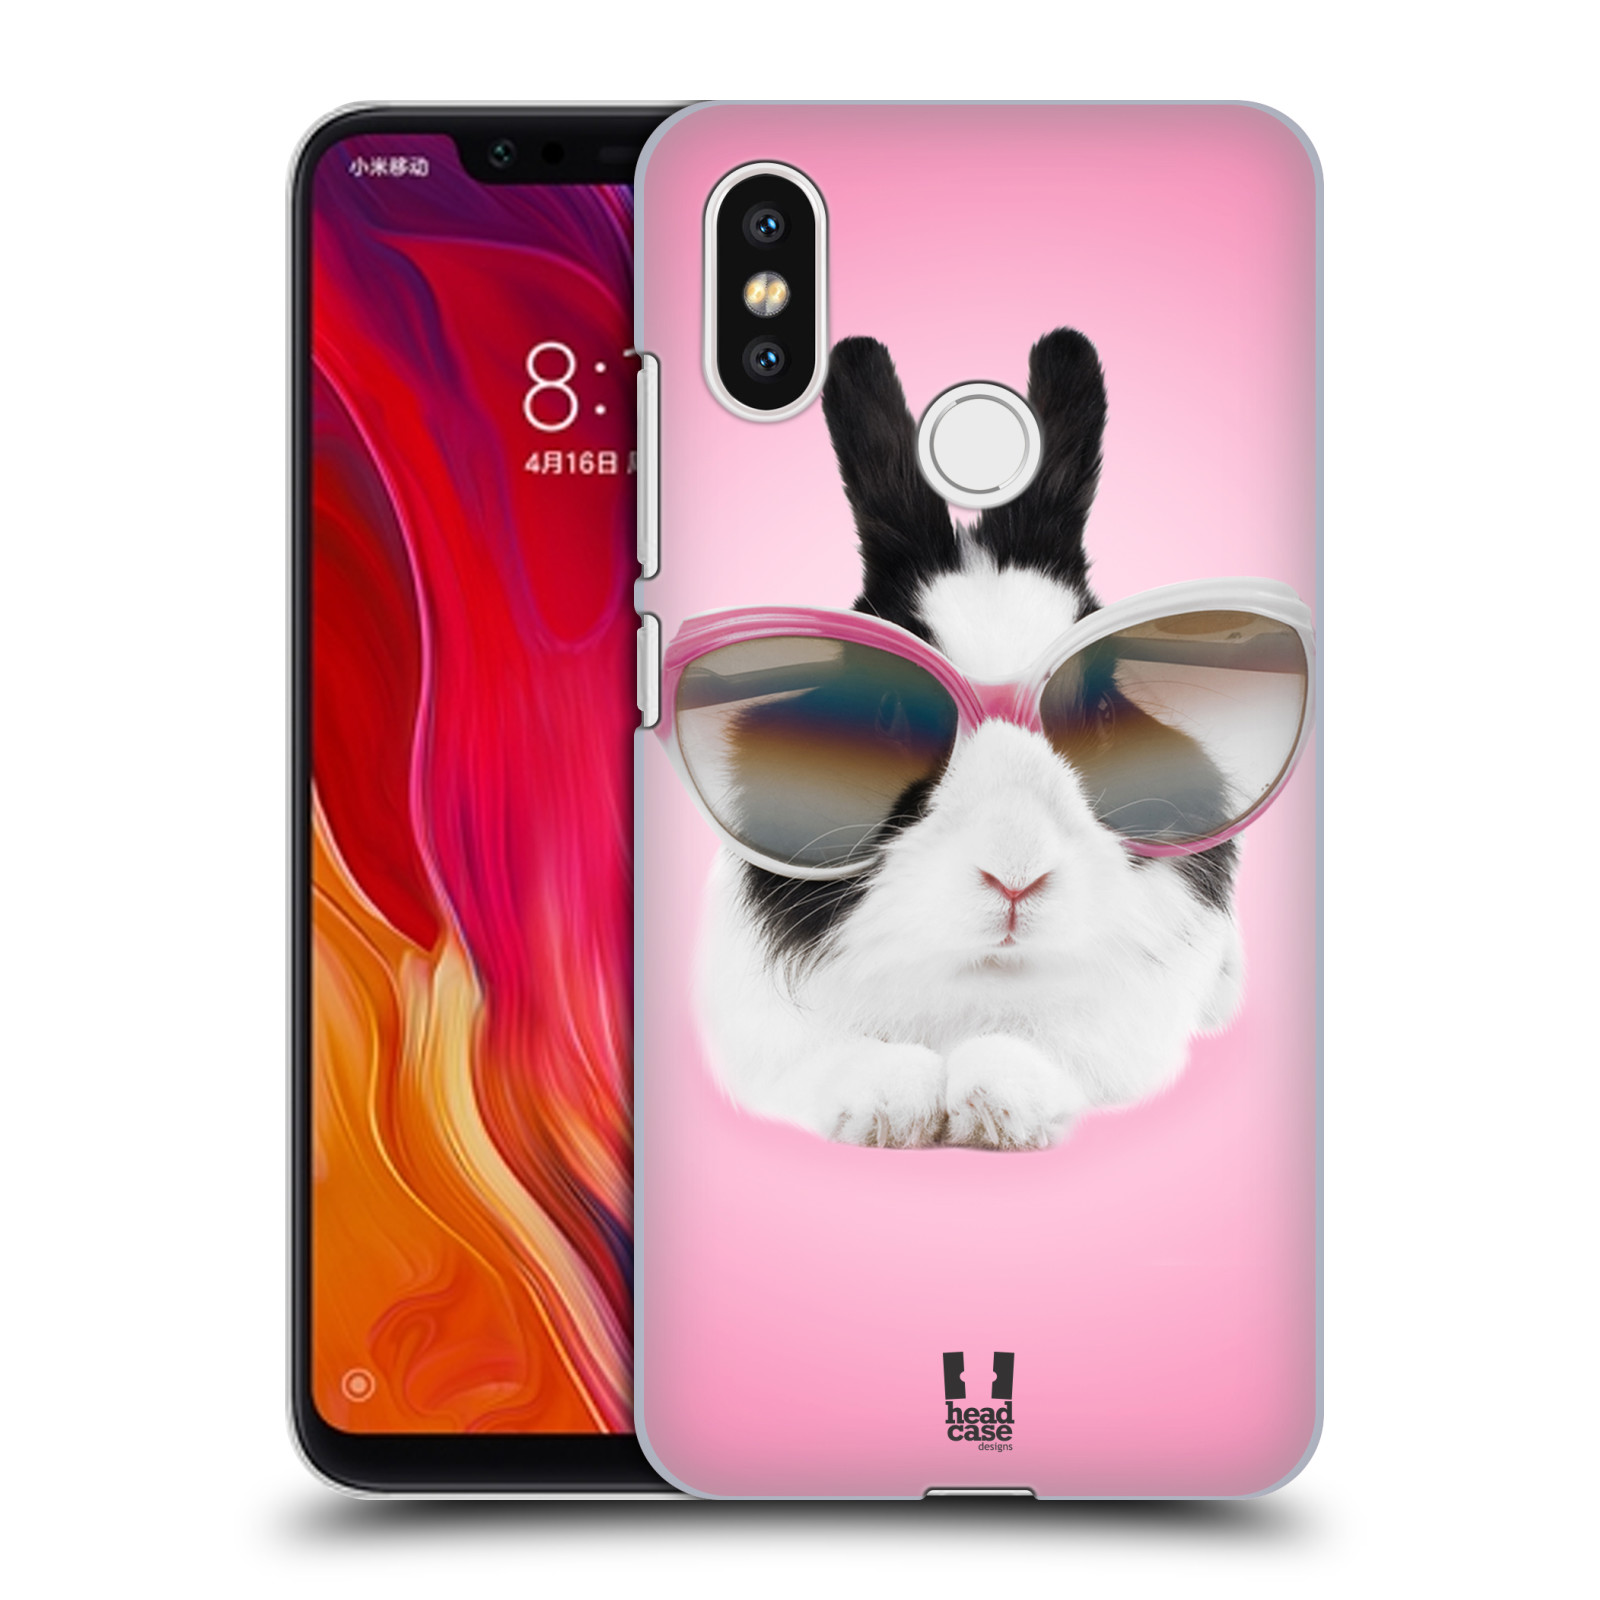 HEAD CASE plastový obal na mobil Xiaomi Mi 8 vzor Legrační zvířátka roztomilý králíček s brýlemi růžová